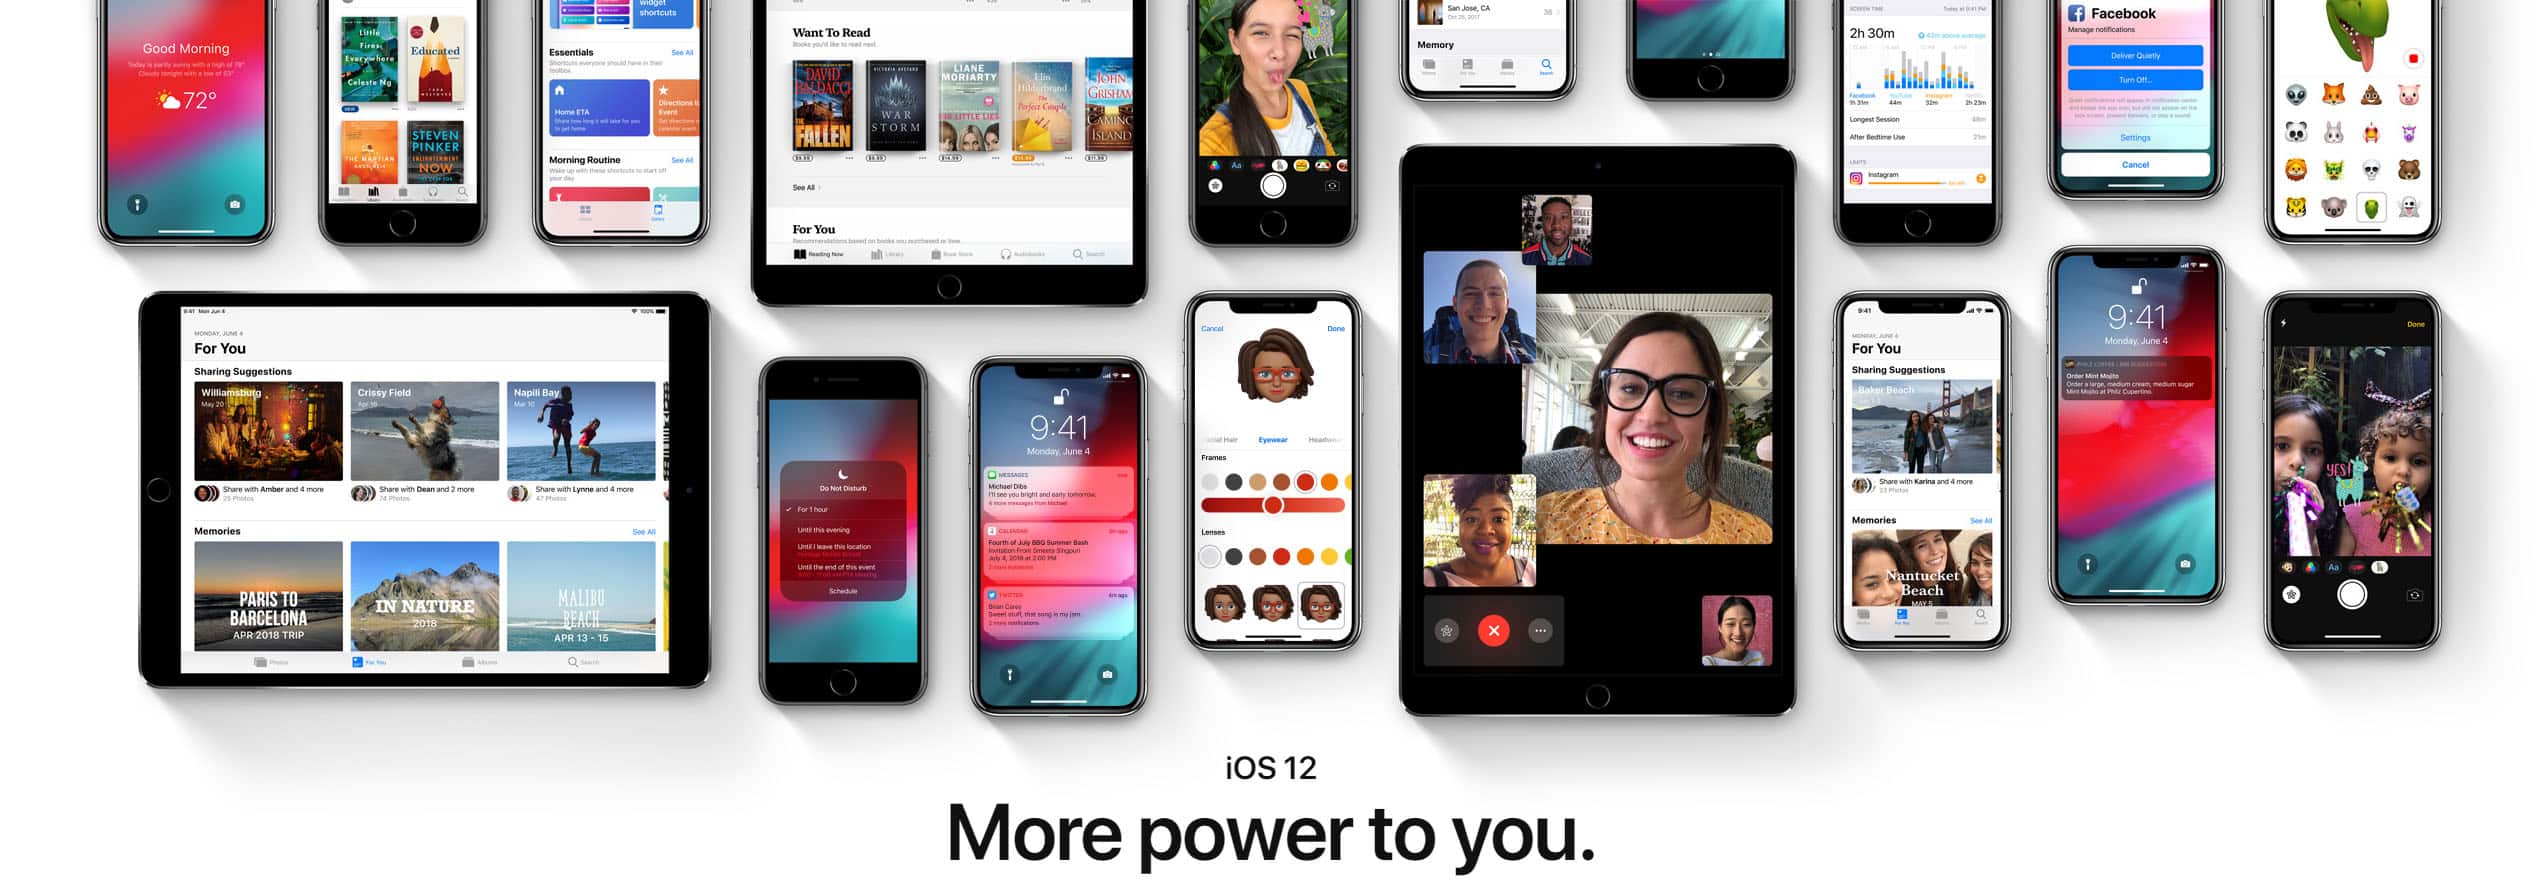 2018 Apple Event Announcement iOS12